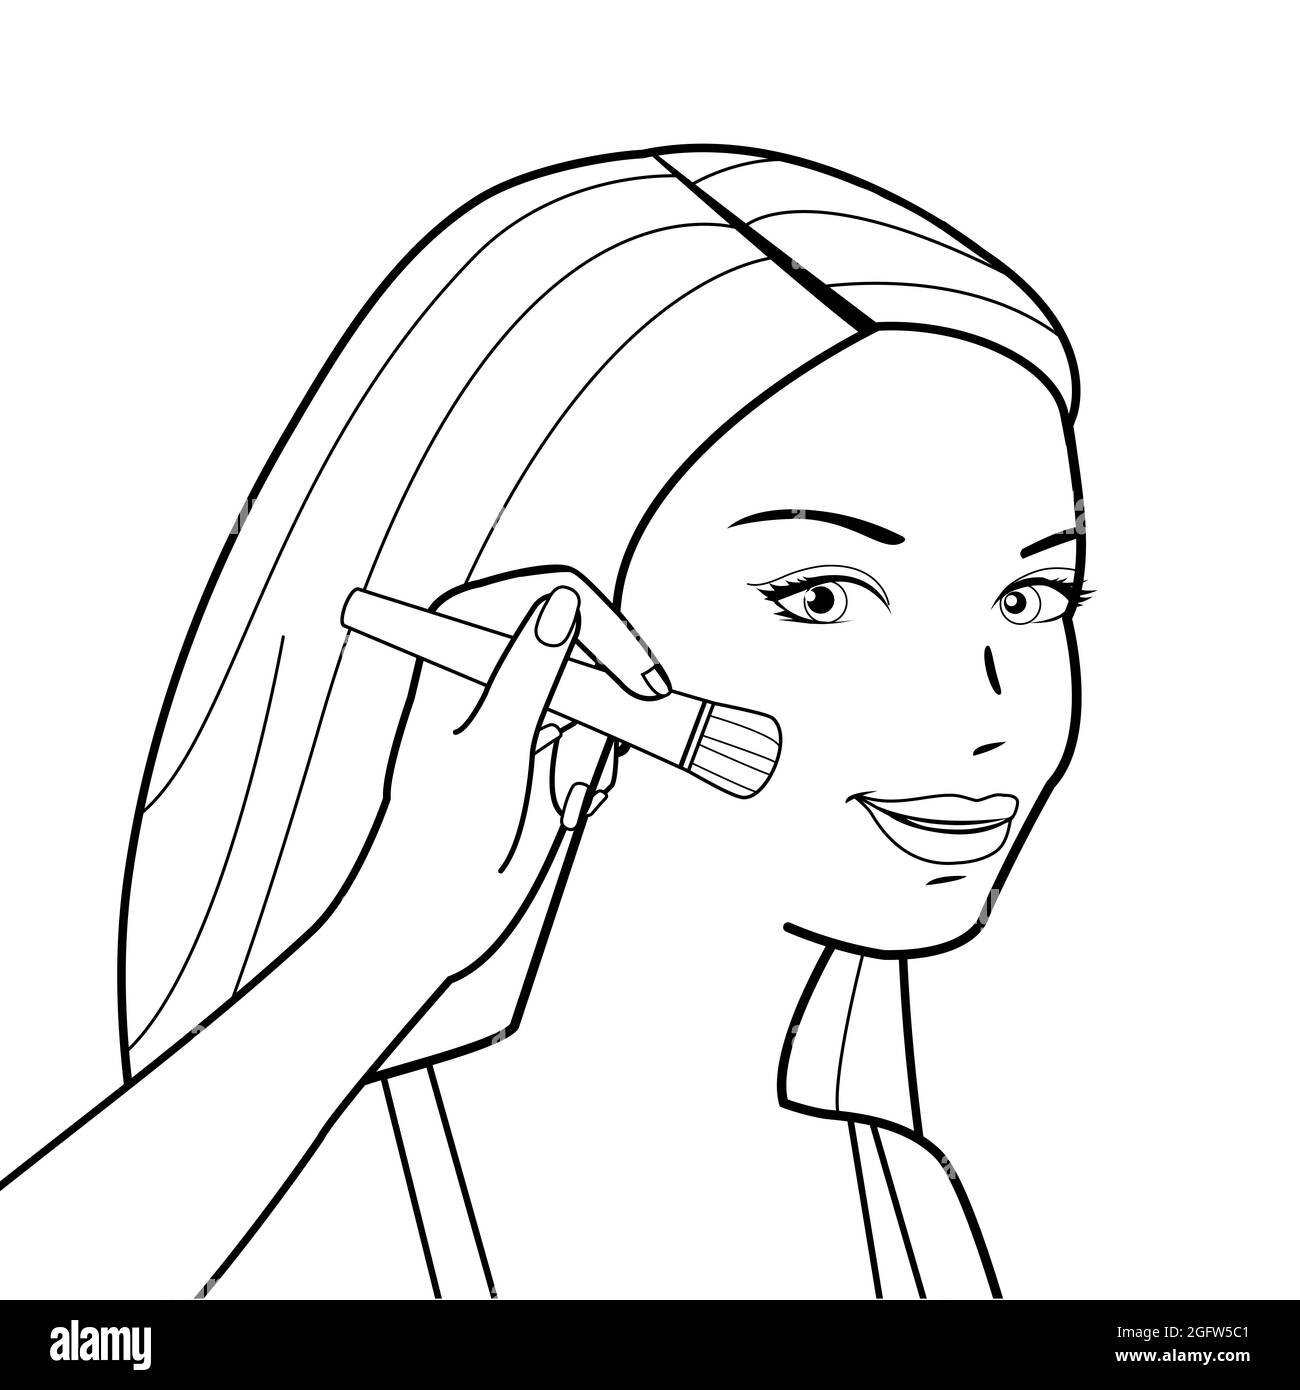 La femme applique de la rougissement sur ses joues. Page de couleur noir et blanc. Banque D'Images